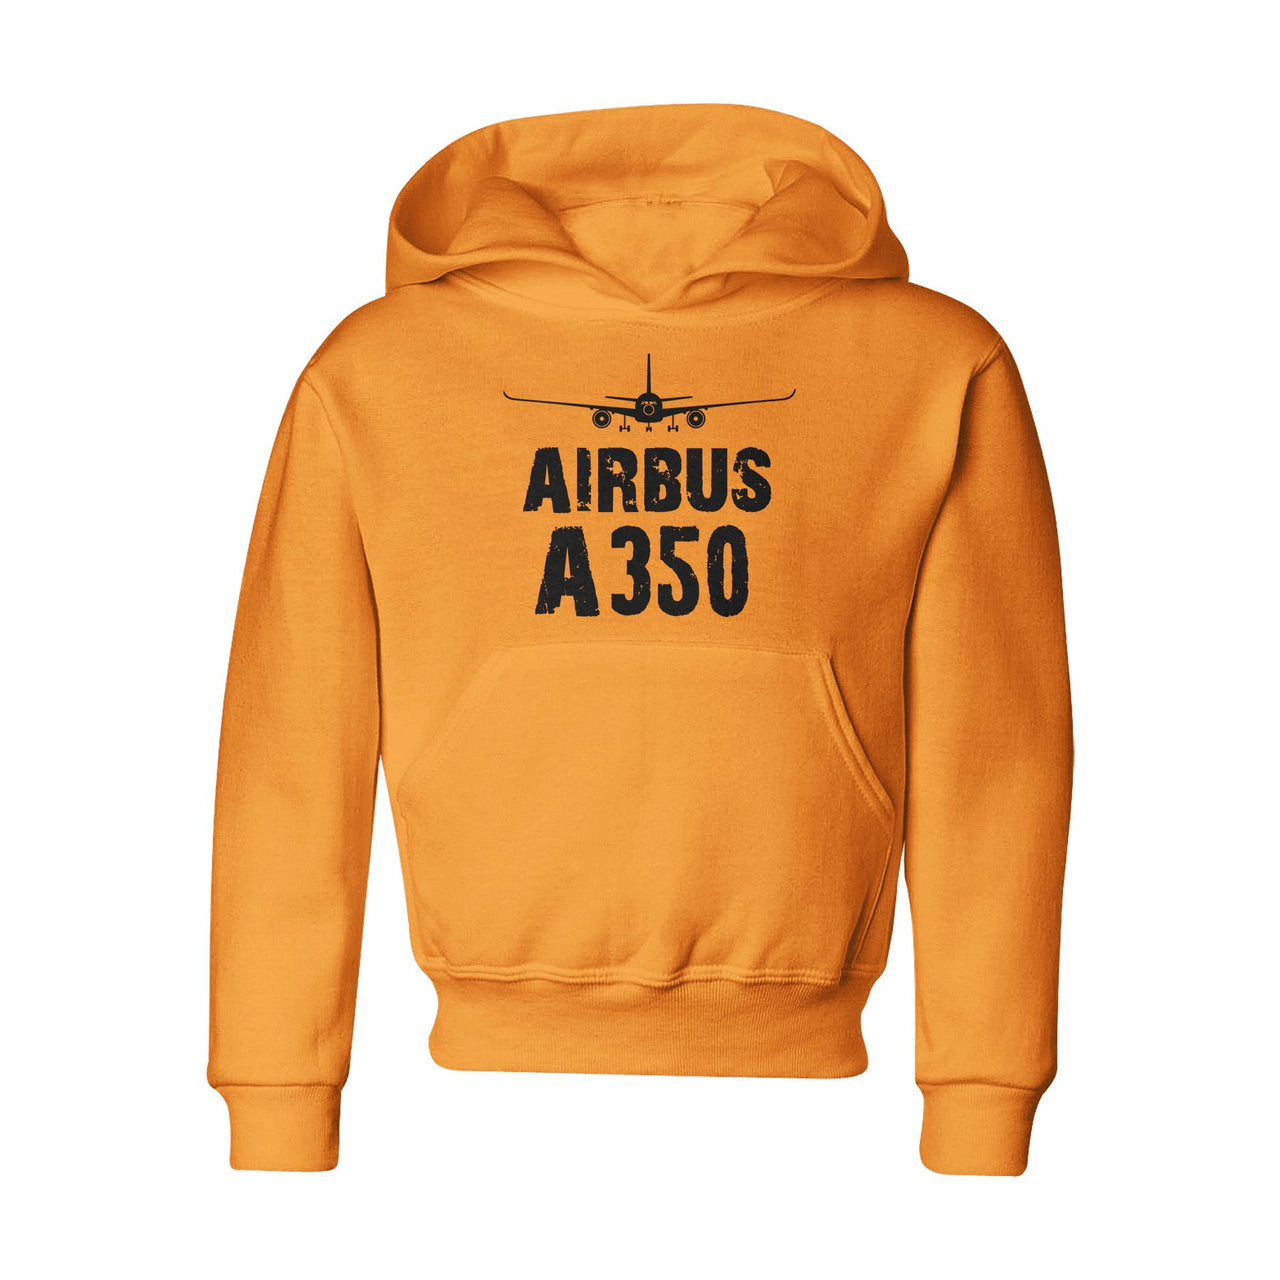 Airbus A350 & Plane Designed "CHILDREN" Hoodies